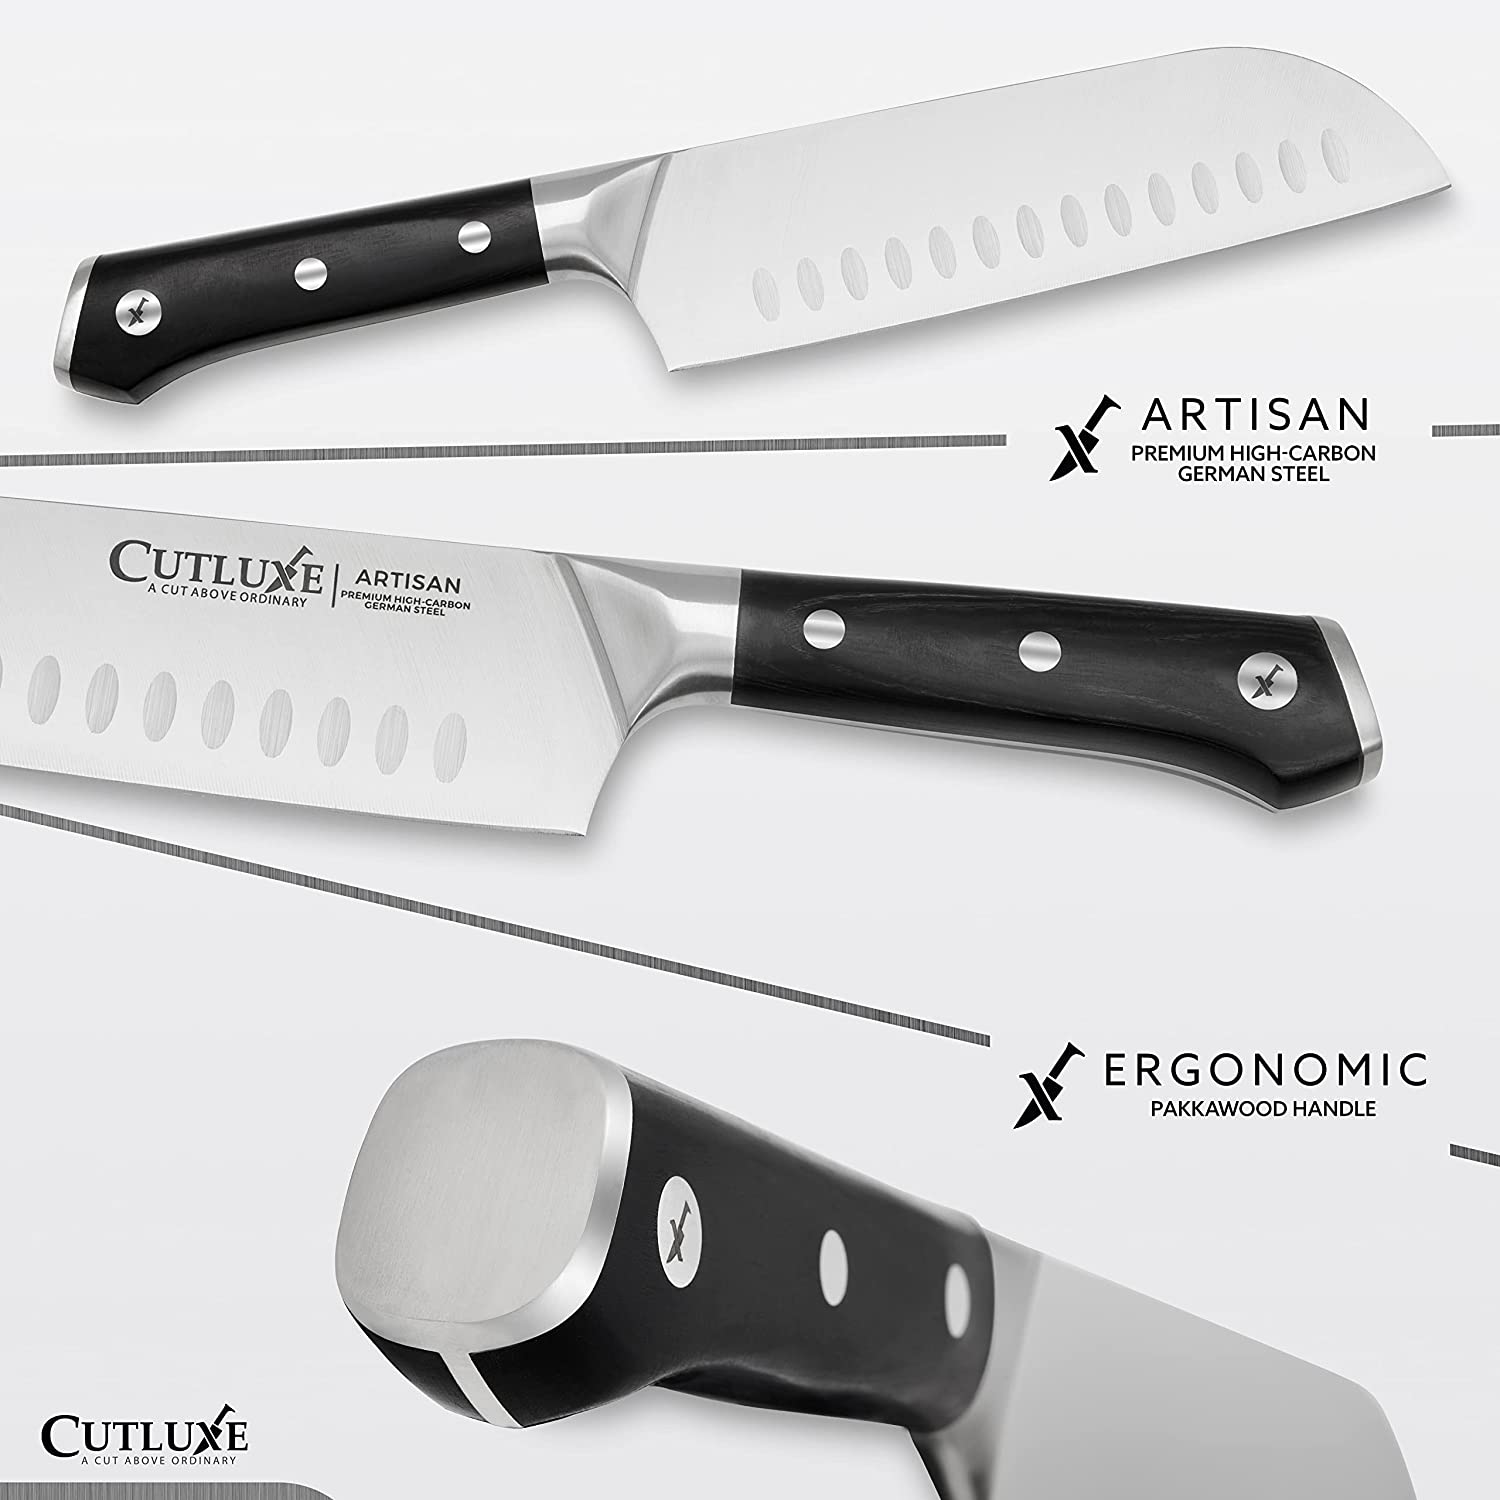 KitchenAid 7 Inch Forged Santoku Knife - Shop Knives at H-E-B